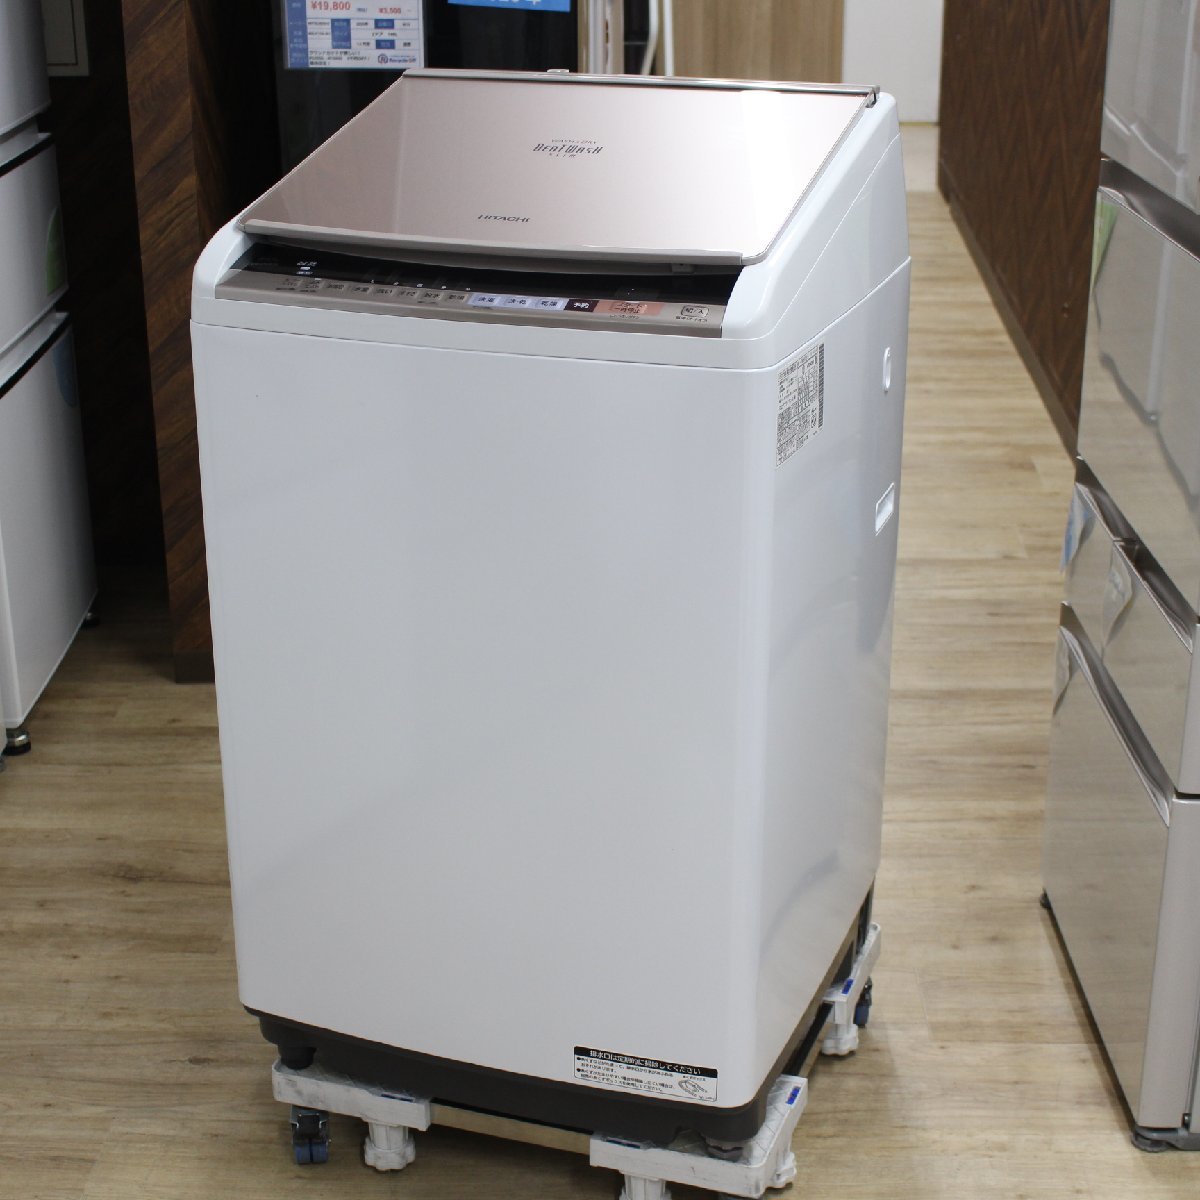 横浜市南区にて 日立 縦型洗濯乾燥機 BW-DV80B 2018年製 を出張買取させて頂きました。